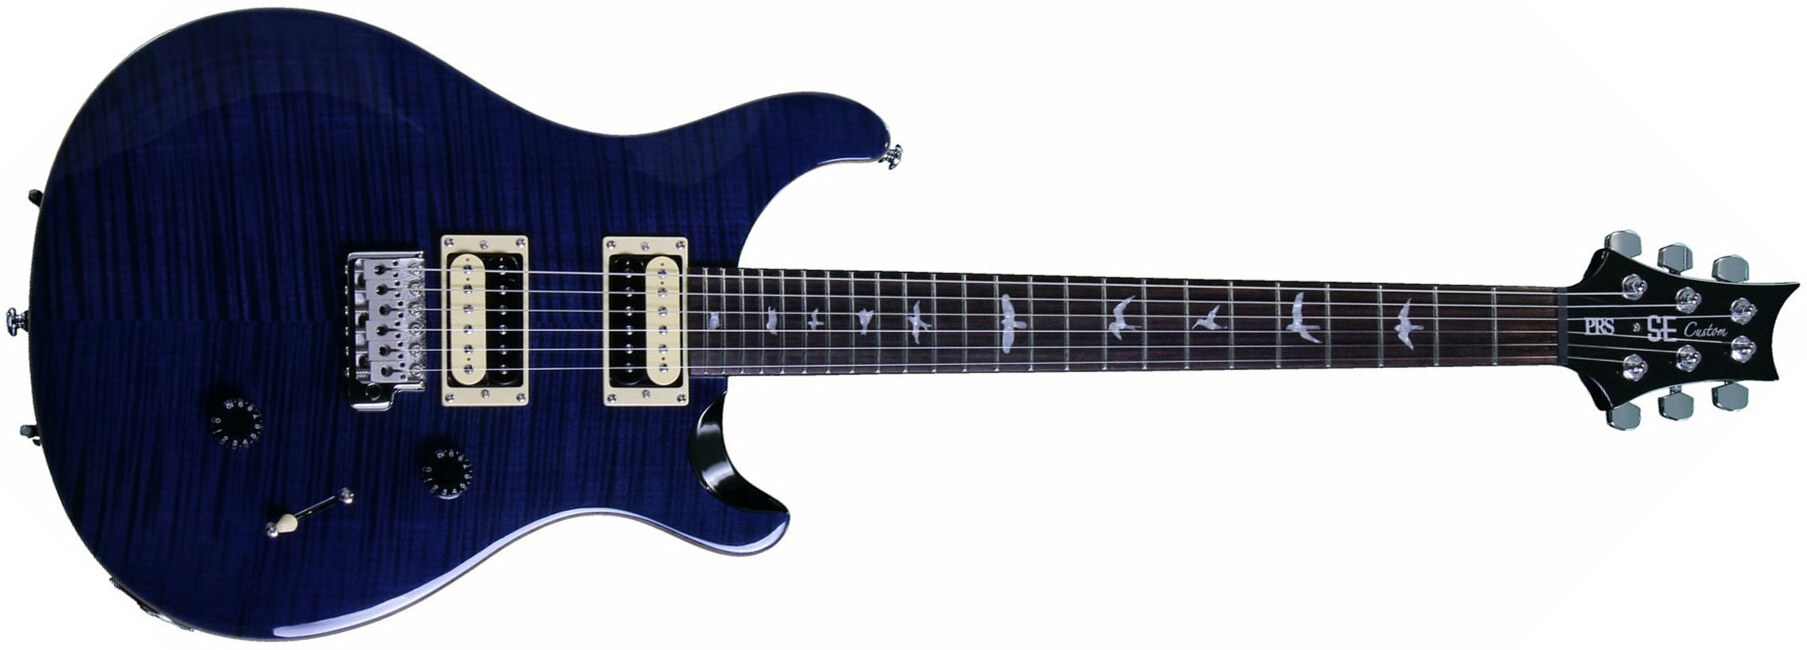 Prs Se Custom 24 2018 Hh Trem Rw - Whale Blue - Guitarra eléctrica de doble corte - Main picture